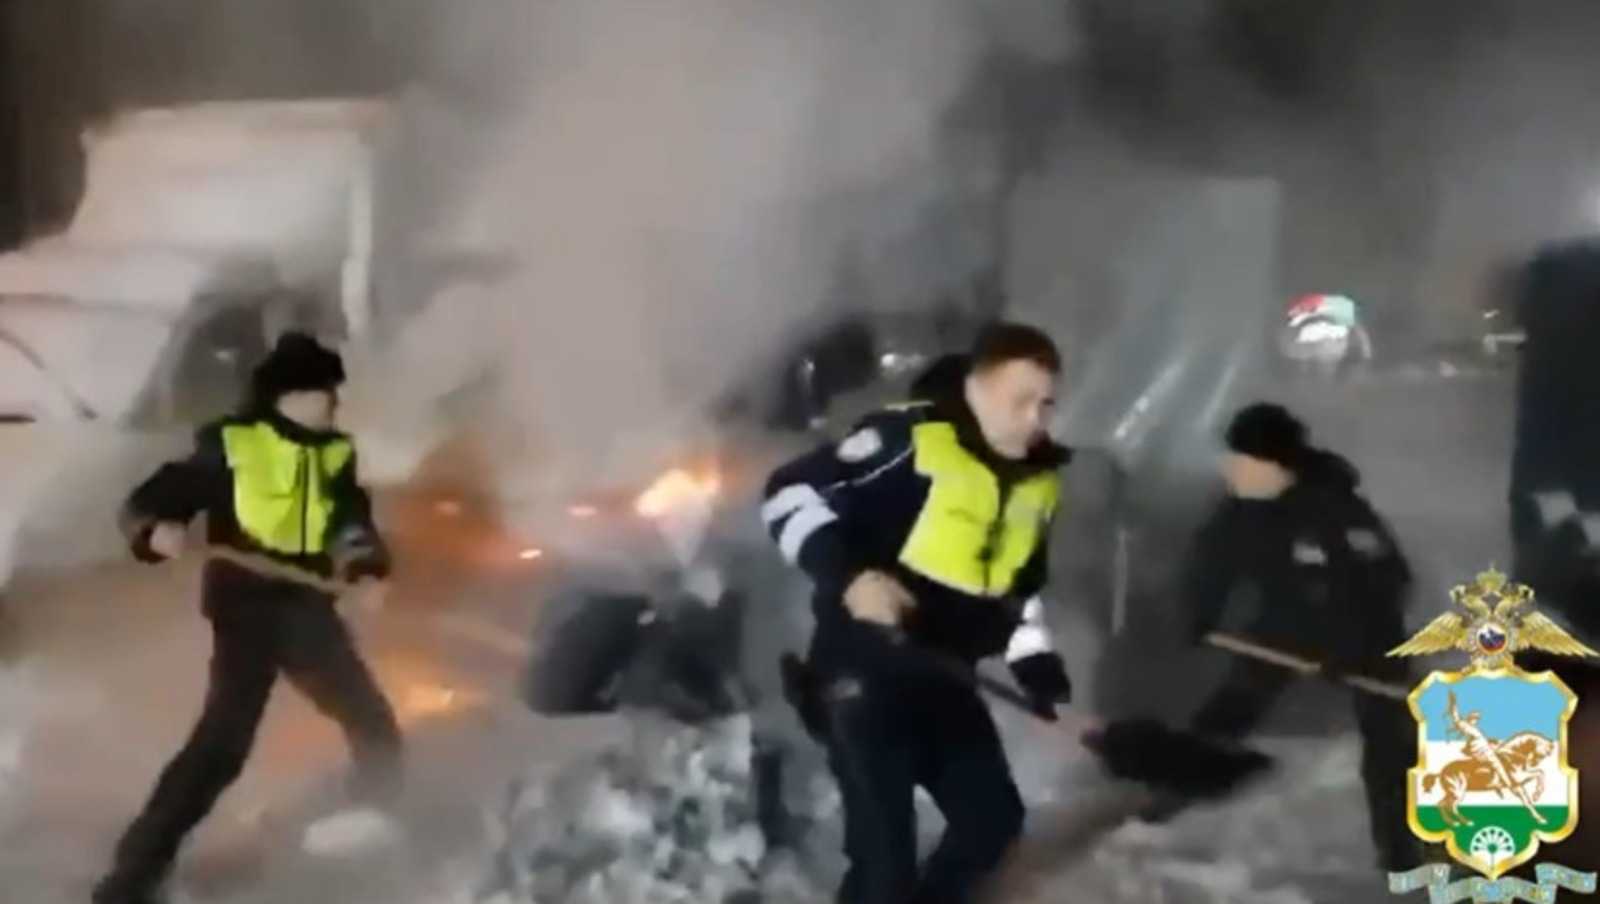 Сотрудники полиции потушили горящий автомобиль на стоянке в Башкирии - видео